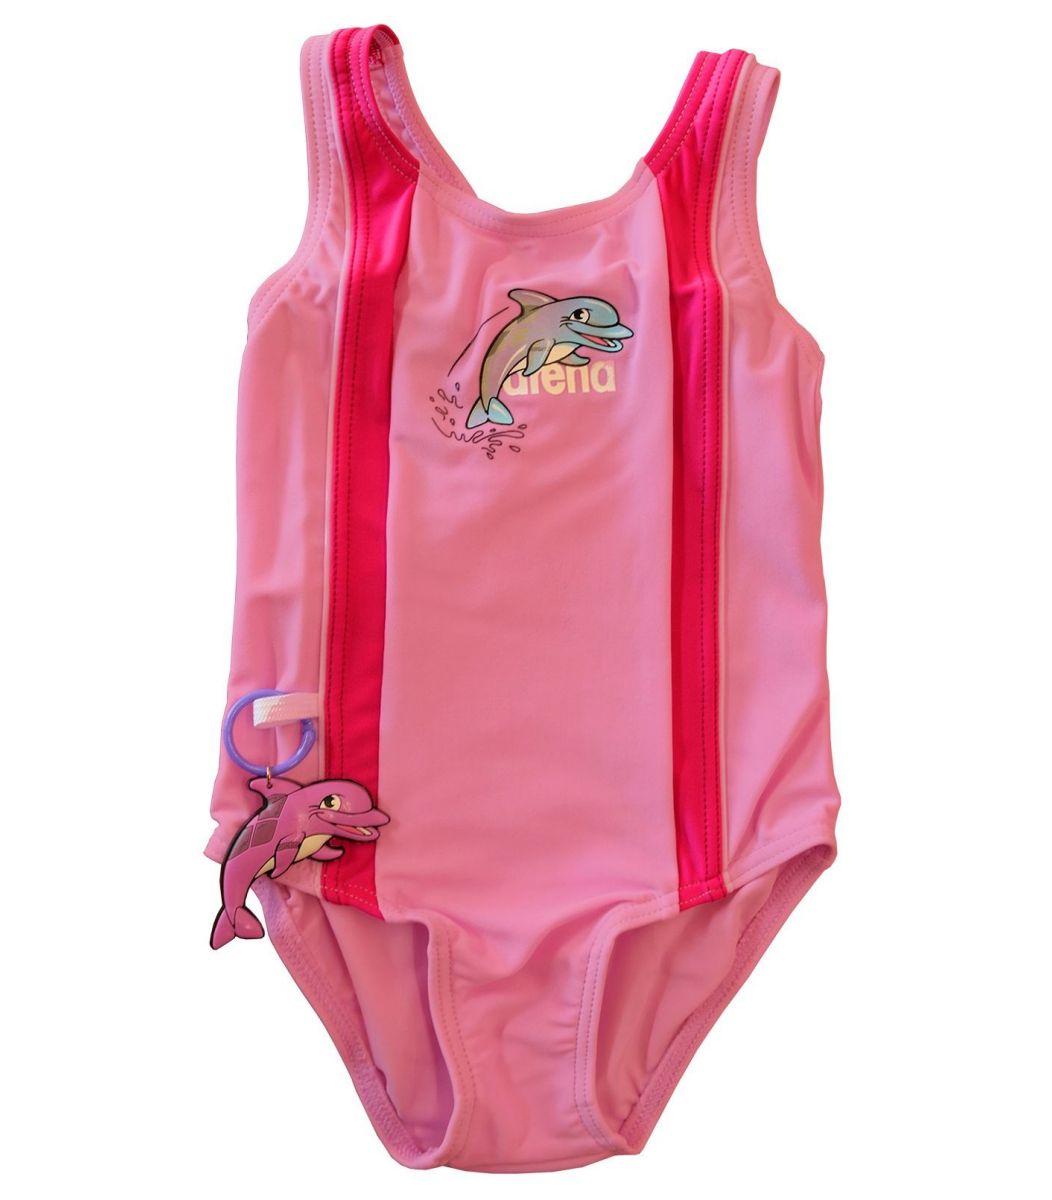  Μαγιό Arena Arena Girl Swimwear Martita Kids 2319599-1